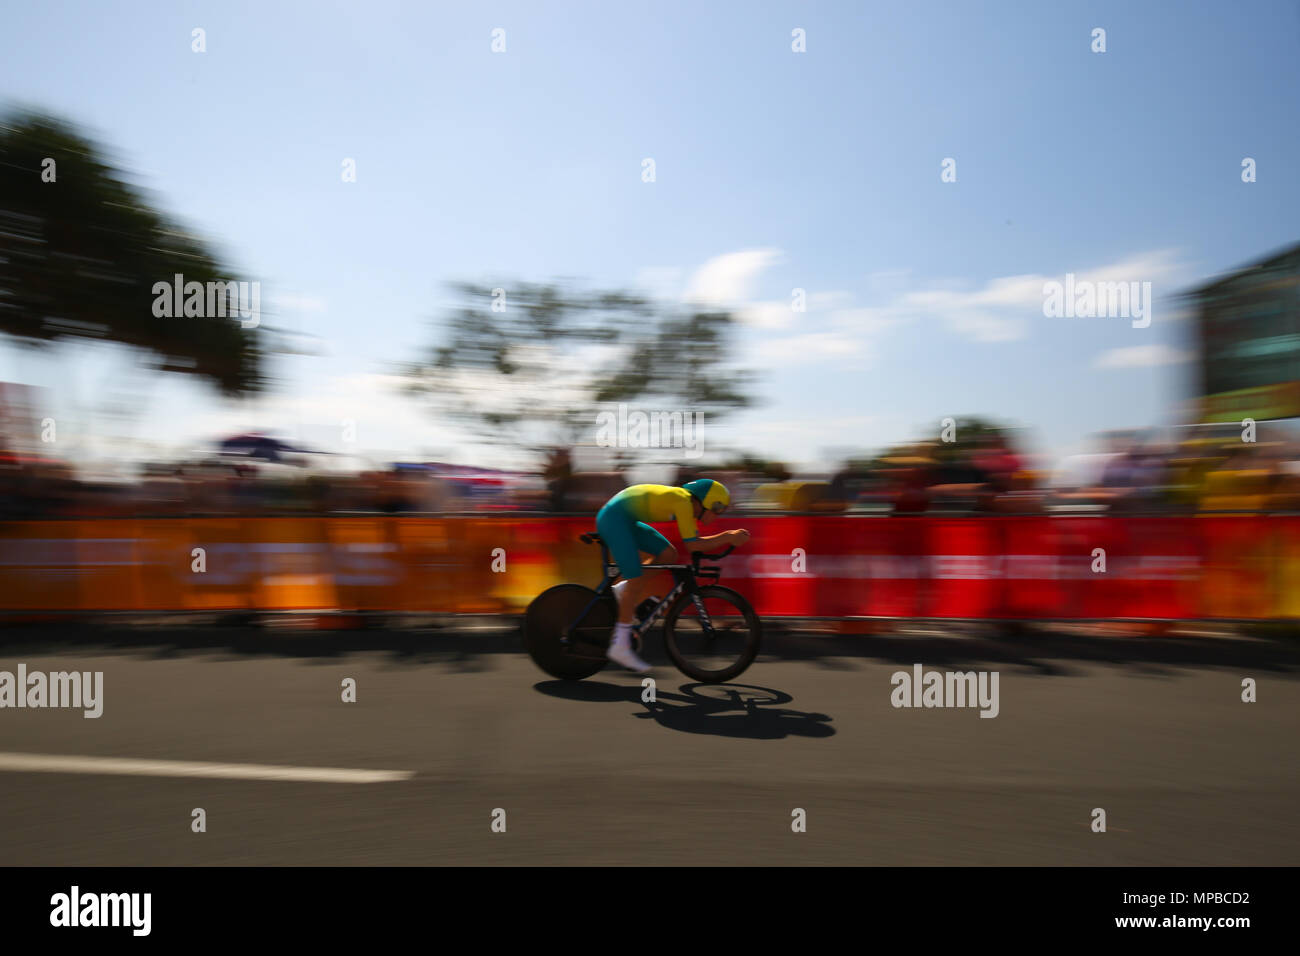 21e Jeux du Commonwealth, le vélo Time Trial, Gold Coast, Queensl Banque D'Images